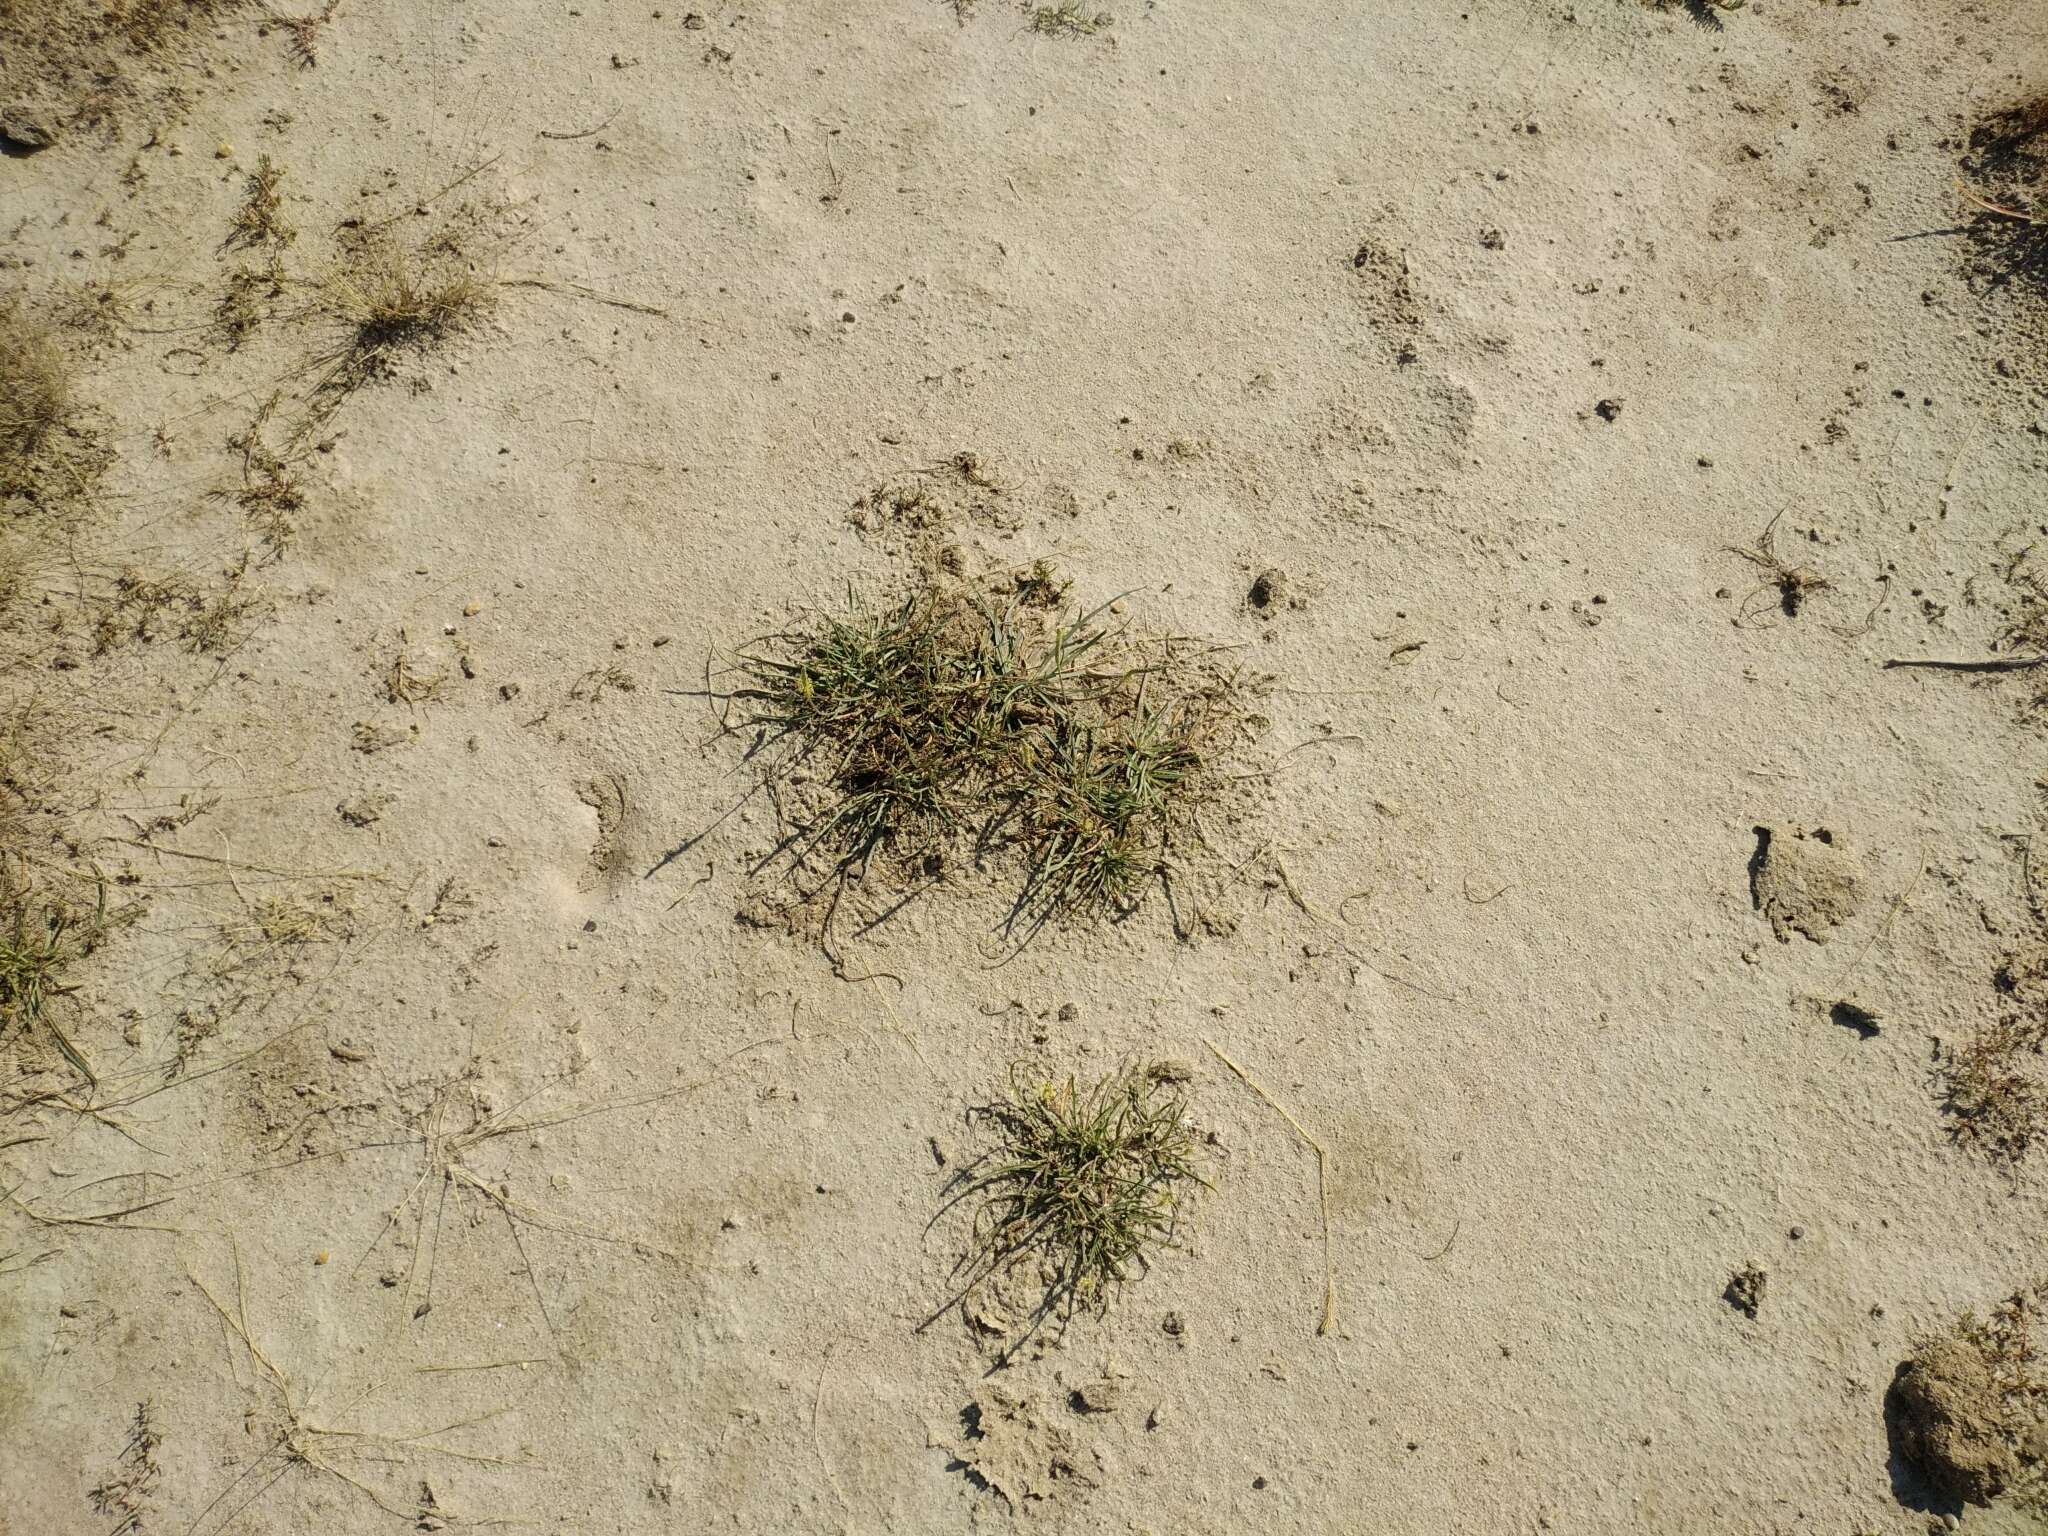 Image of Plantago maritima subsp. ciliata Printz